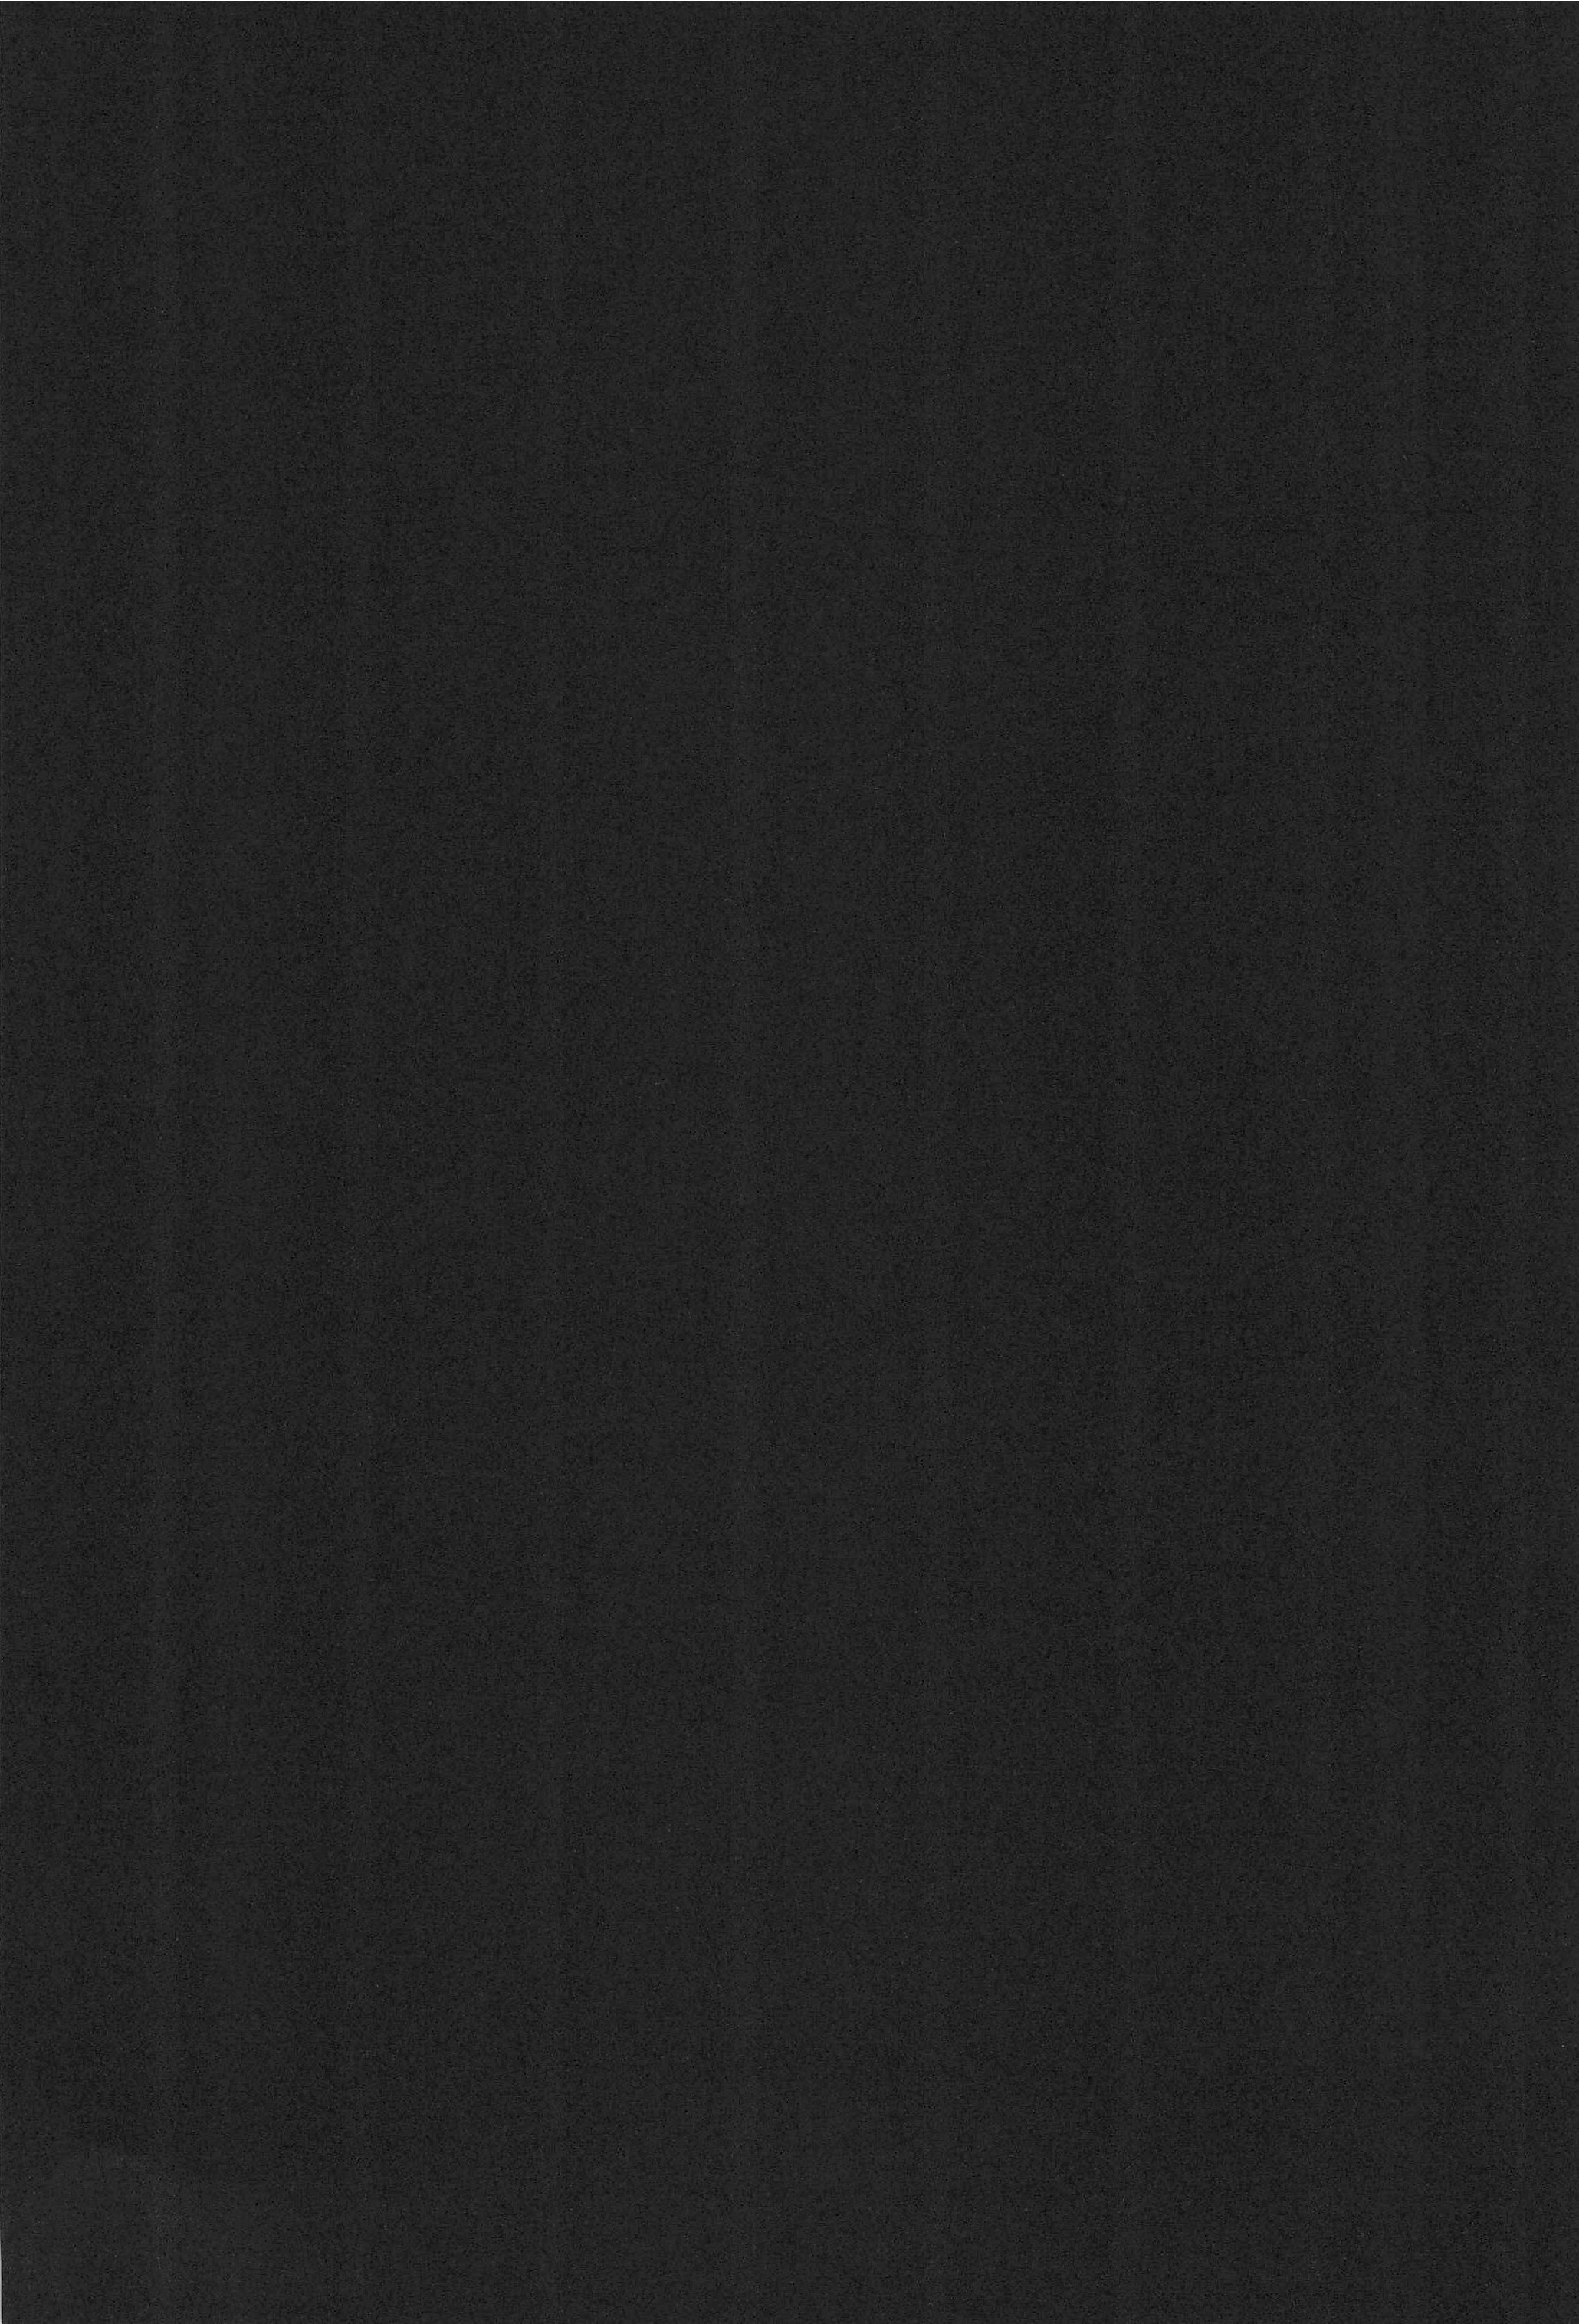 [忍ノ館 (いわまよしき)] JEWEL BOX 7 -SECOND EDITION- (カードキャプターさくら) [1999年7月31日]